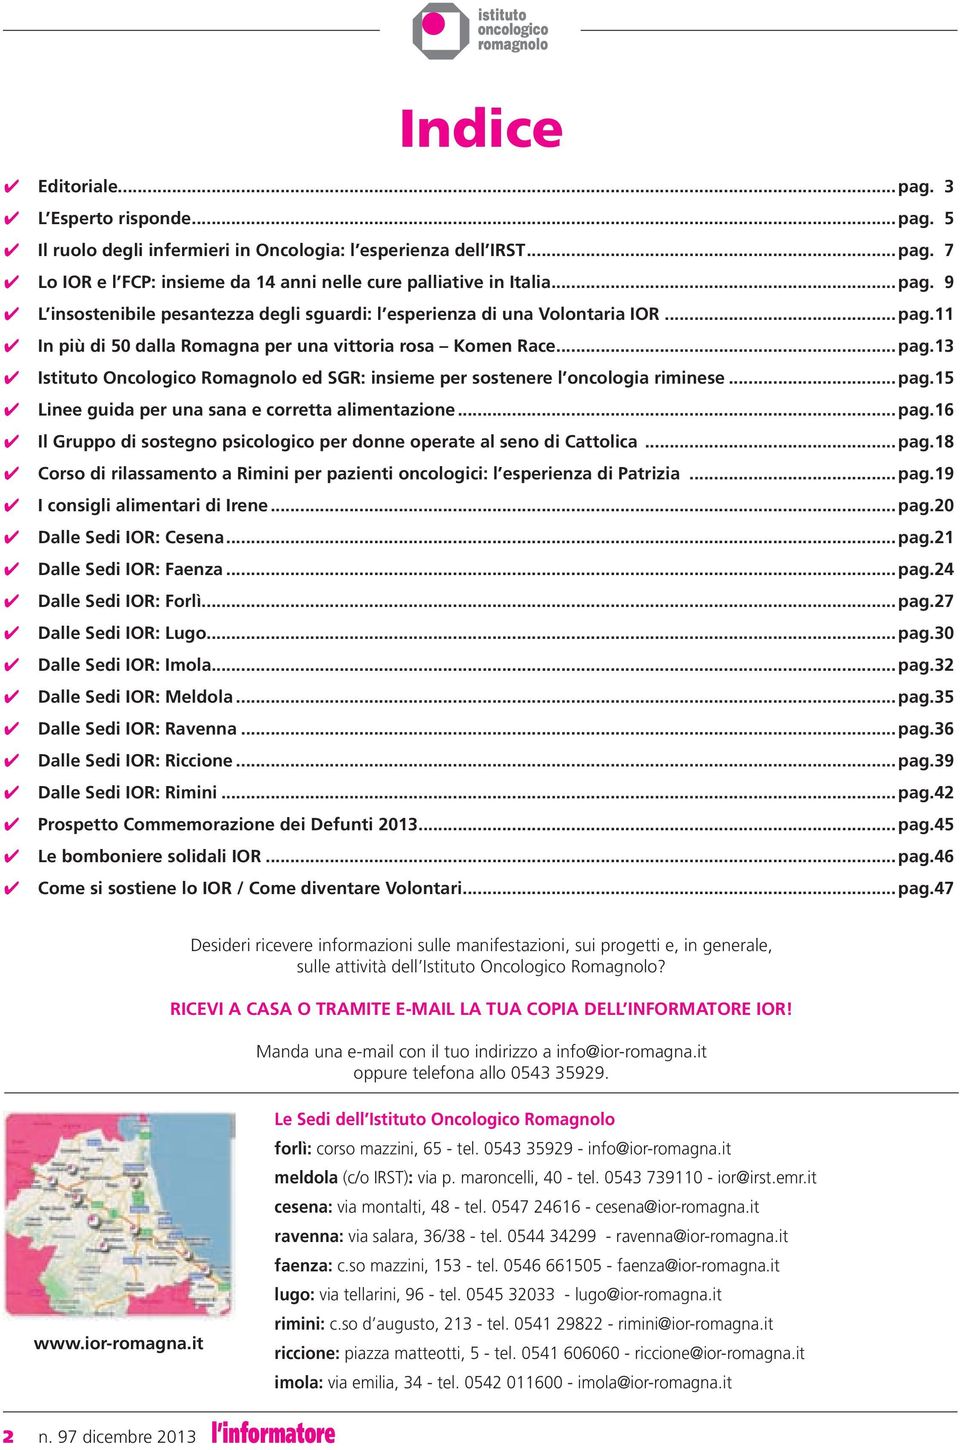 ..pag.16 Il Gruppo di sostegno psicologico per donne operate al seno di Cattolica...pag.18 Corso di rilassamento a Rimini per pazienti oncologici: l esperienza di Patrizia...pag.19 I consigli alimentari di Irene.